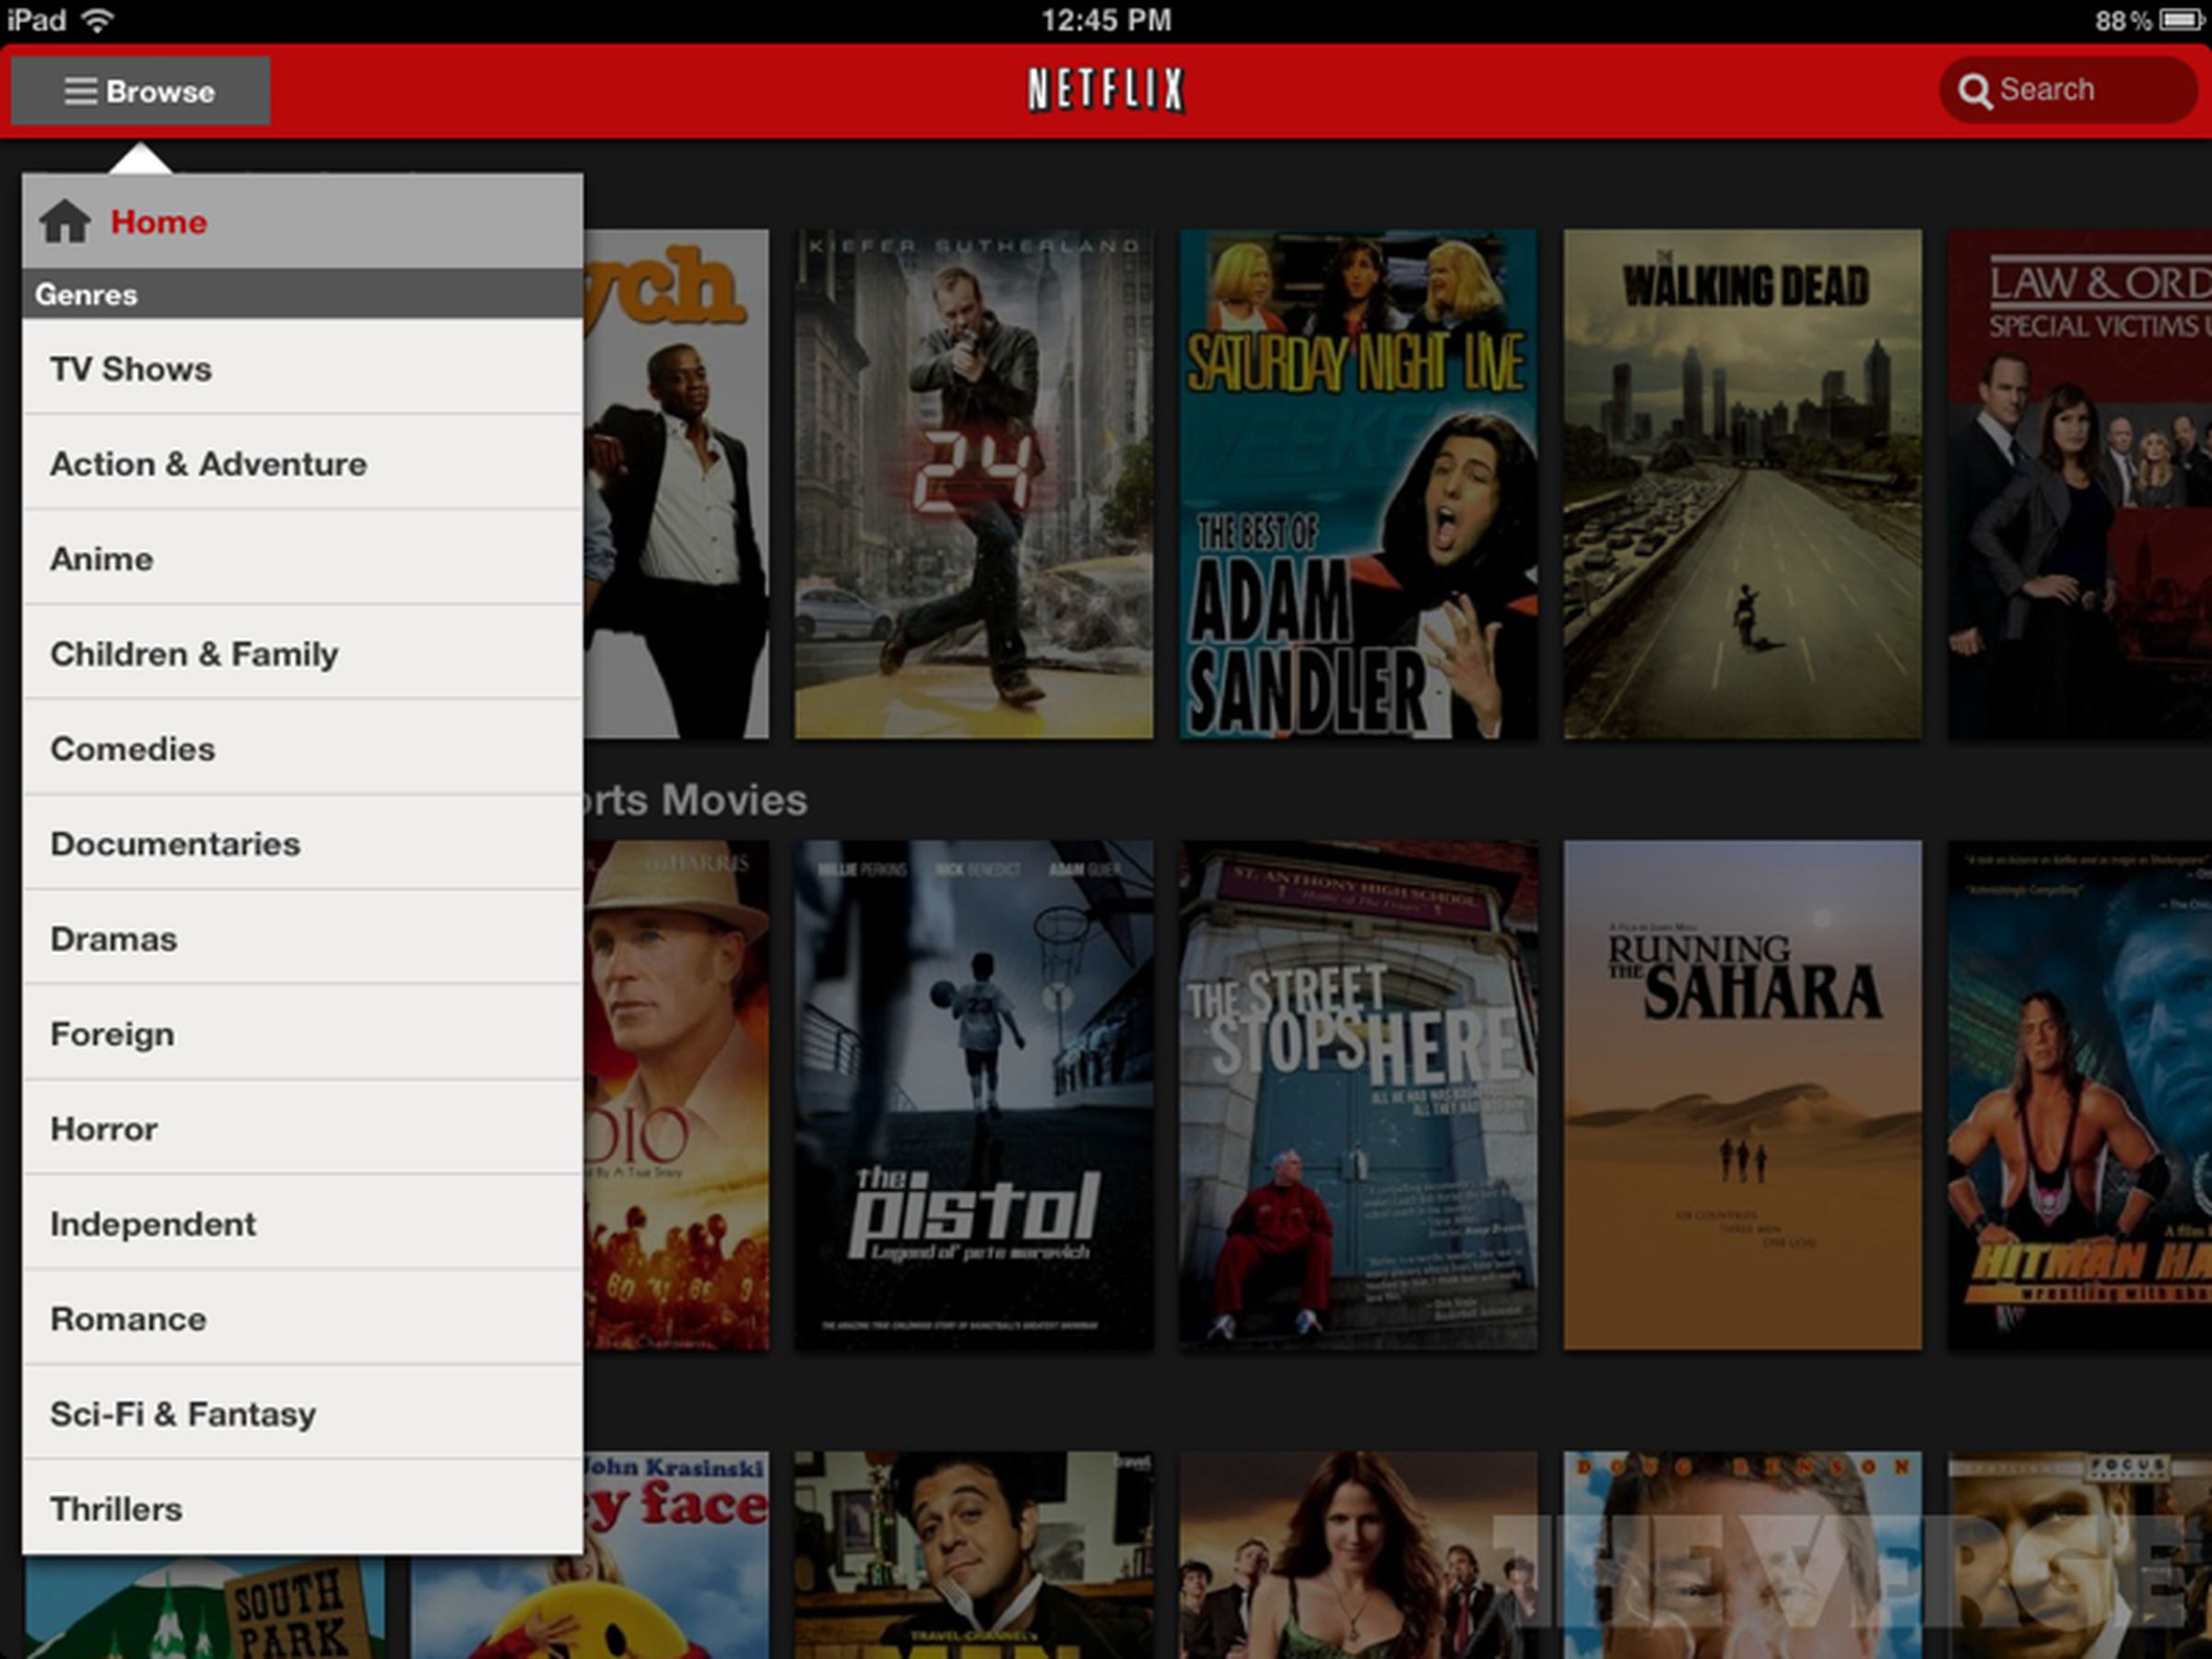 Netflix iPad app redesign